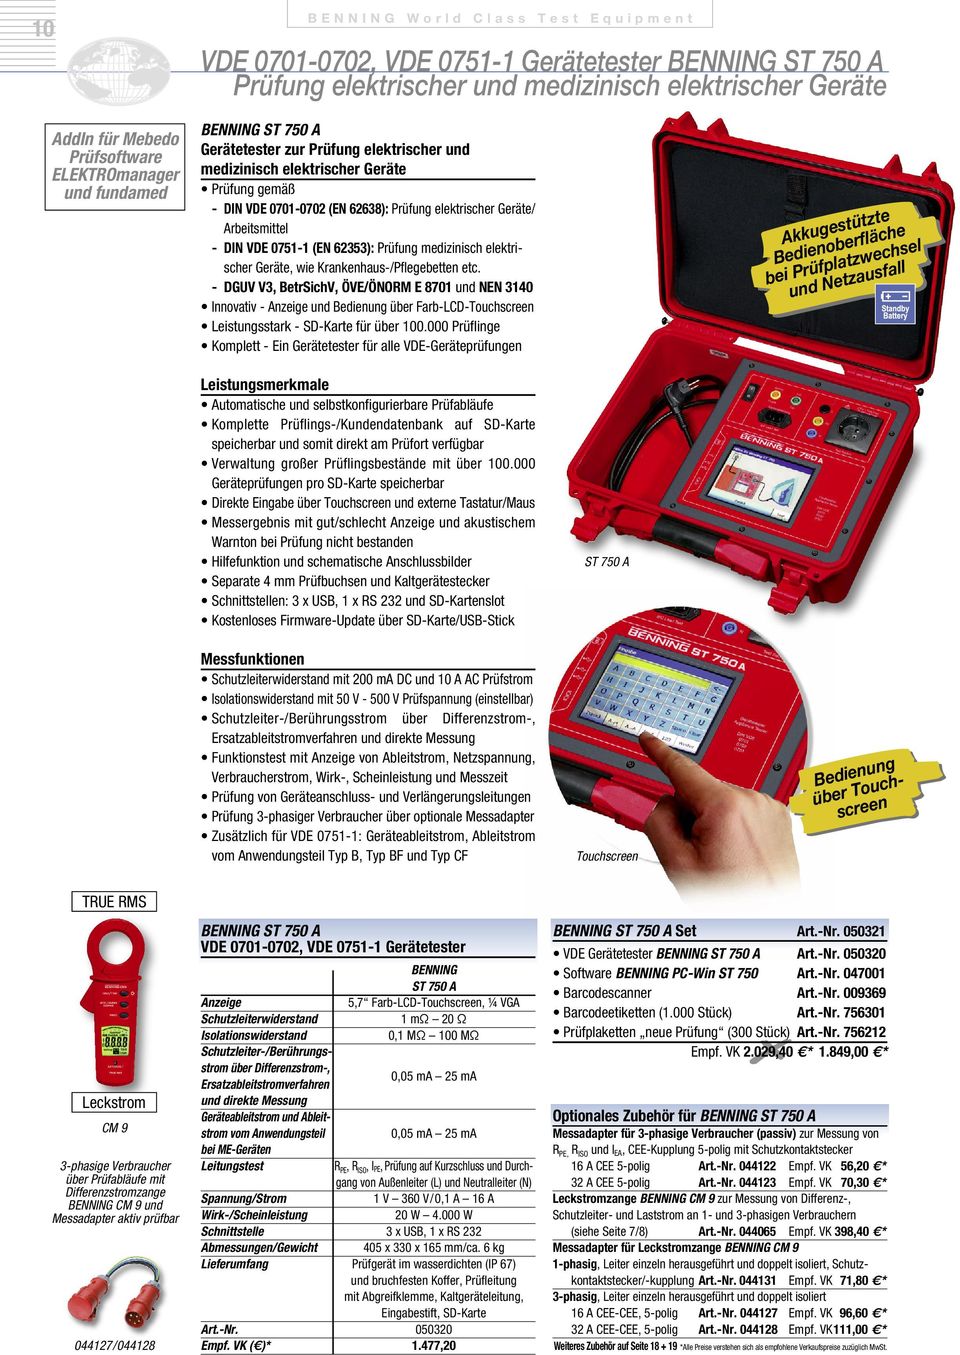 Geräte/ Arbeitsmittel - DIN VDE 0751-1 (EN 62353): Prüfung medizinisch elektrischer Geräte, wie Krankenhaus-/Pflegebetten etc.